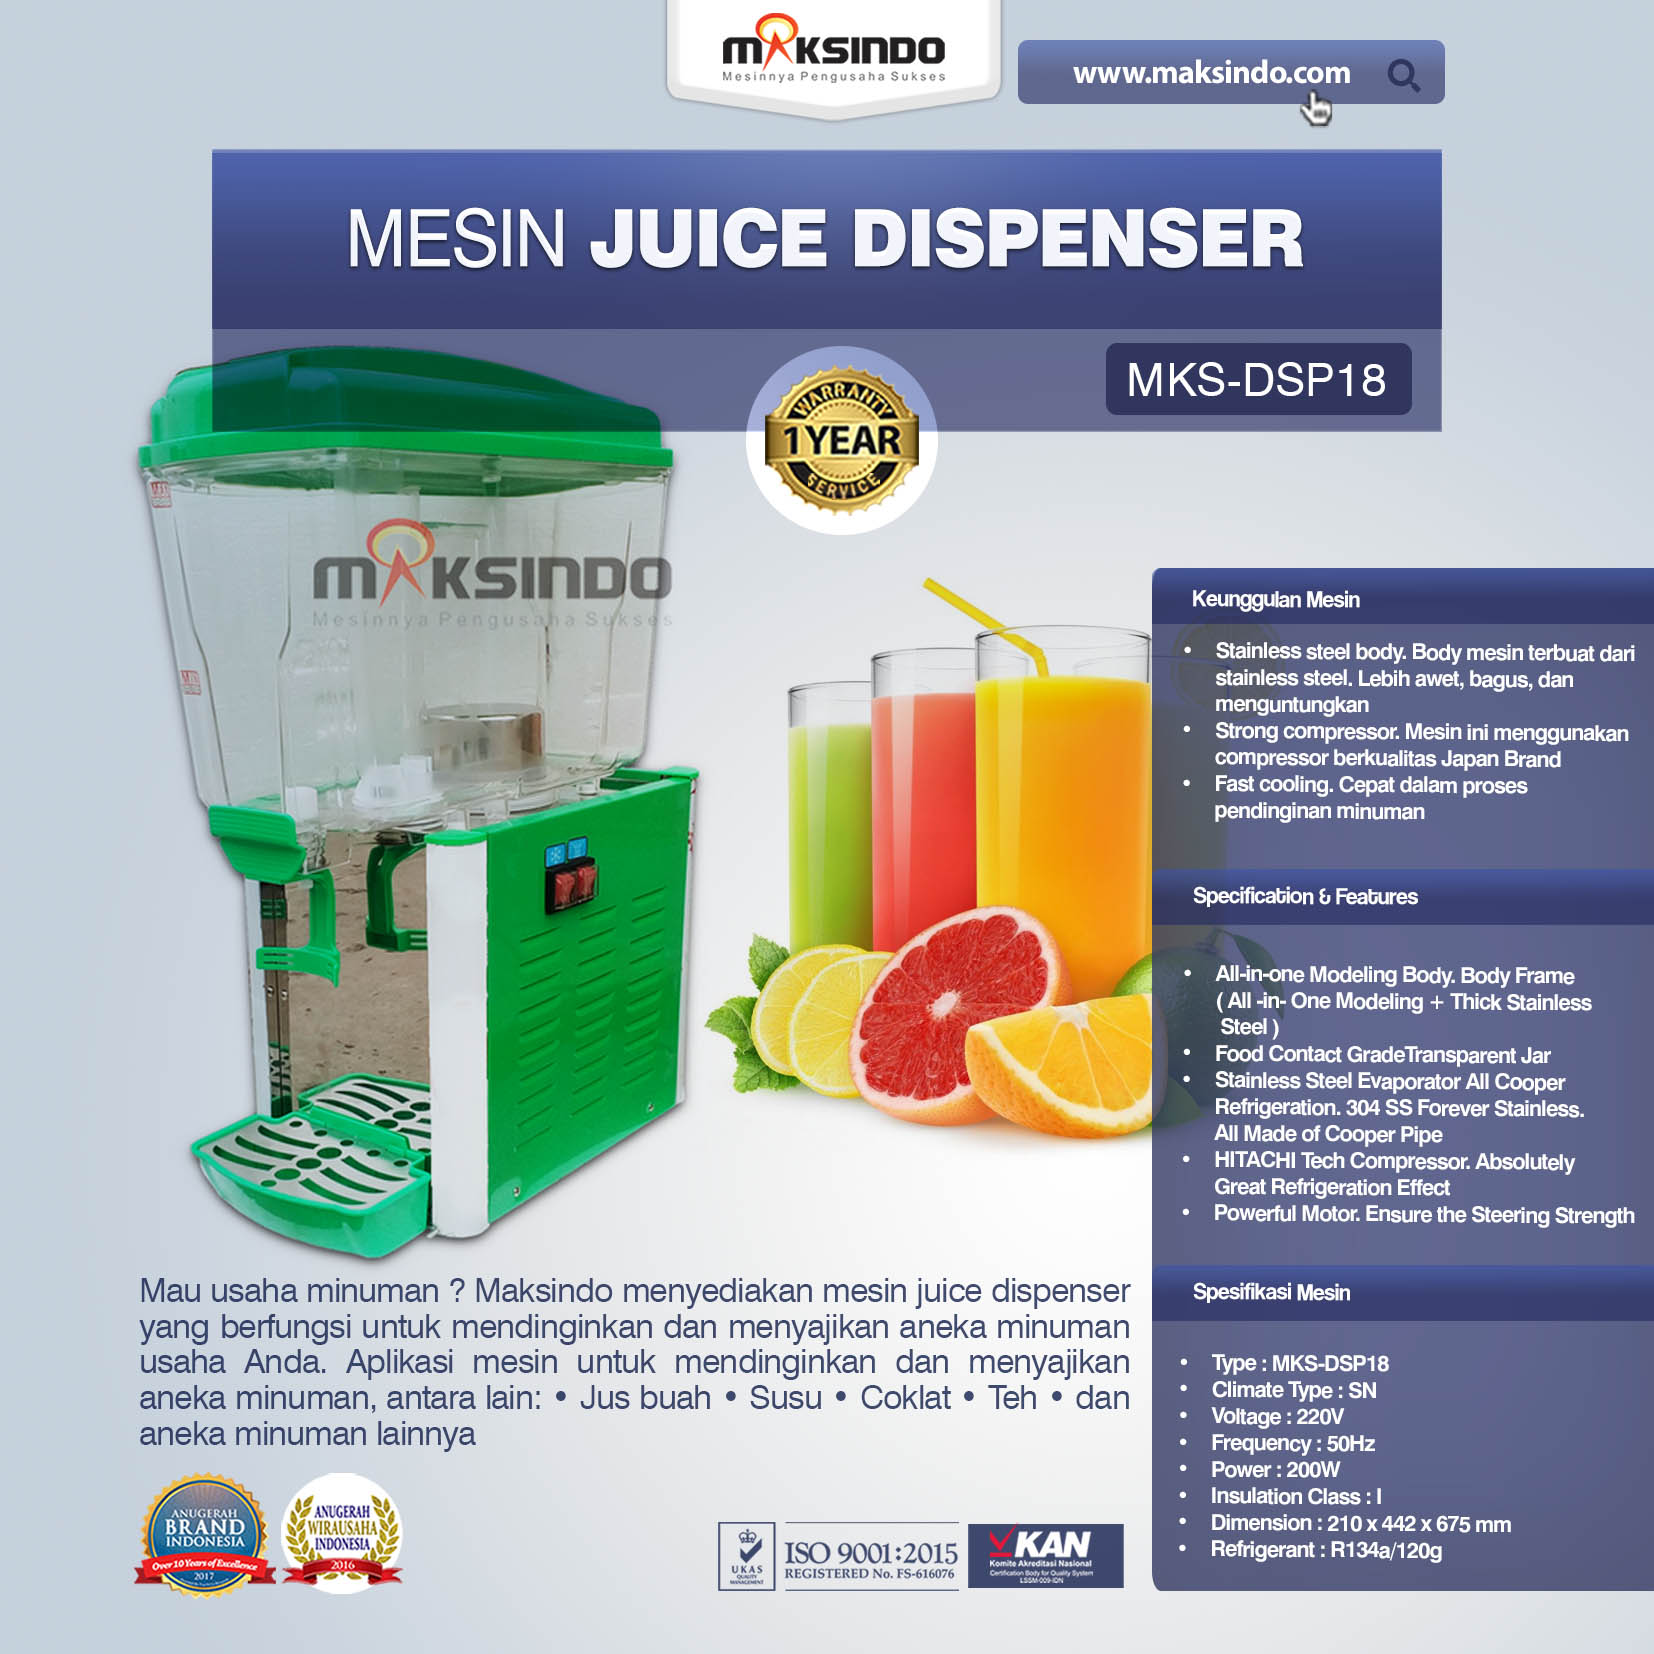 Jual Mesin Juice Dispenser MKS-DSP18 di Malang